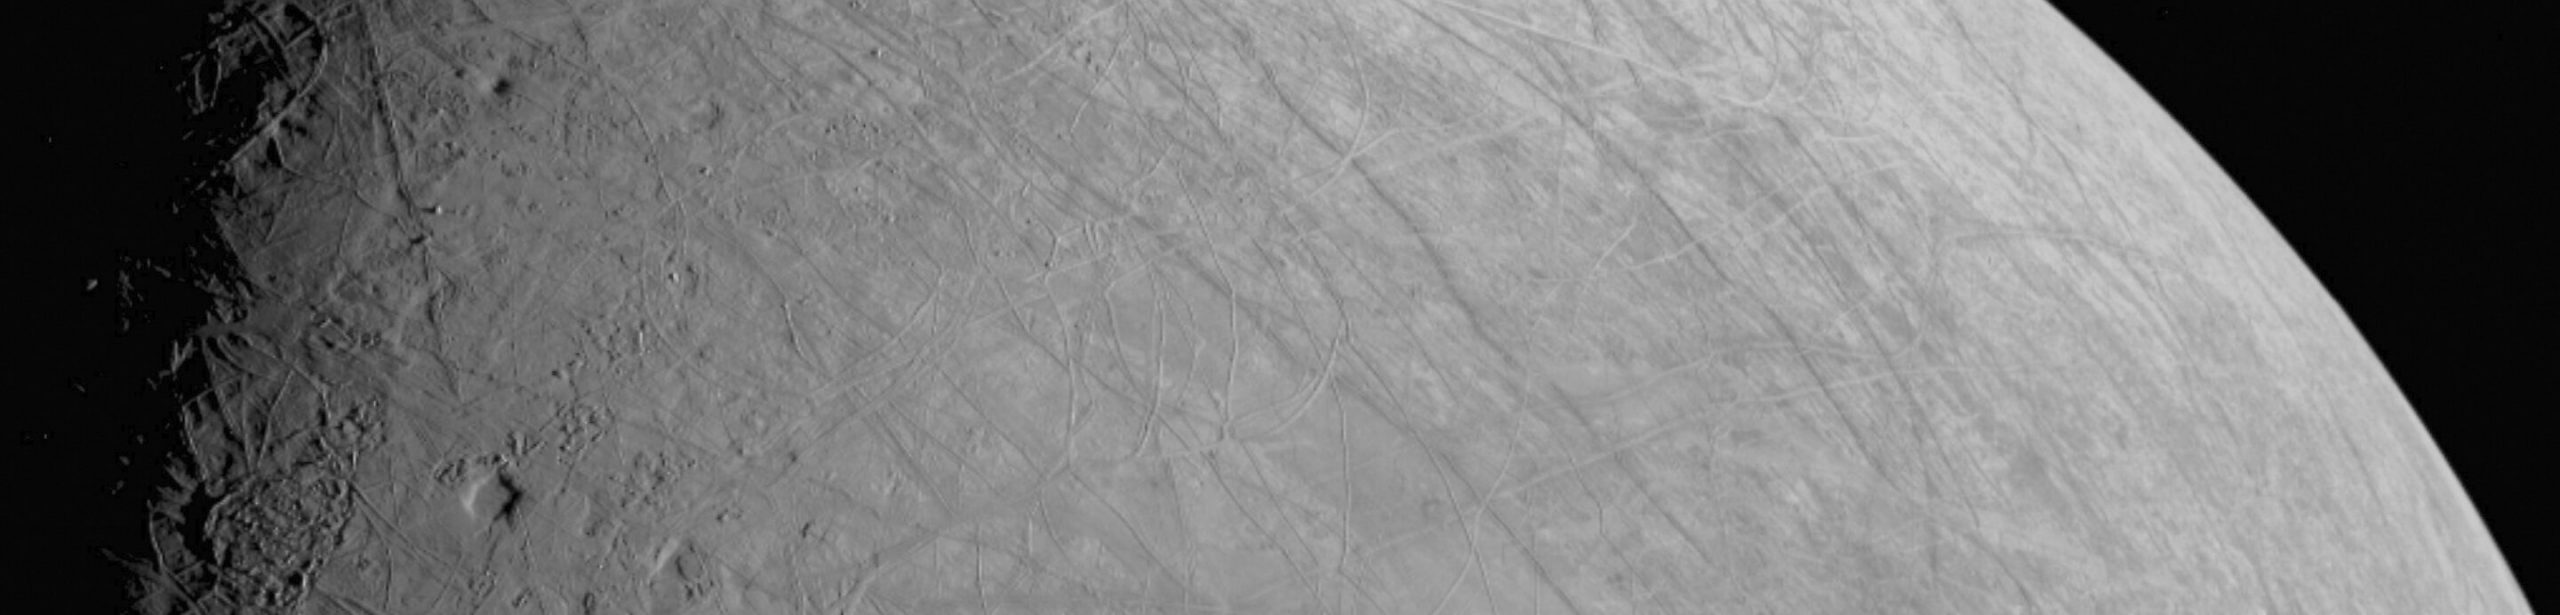 Сложная, покрытая льдом поверхность спутника Юпитера Европы была запечатлена космическим аппаратом «Юнона» во время пролета 29 сентября 2022 года